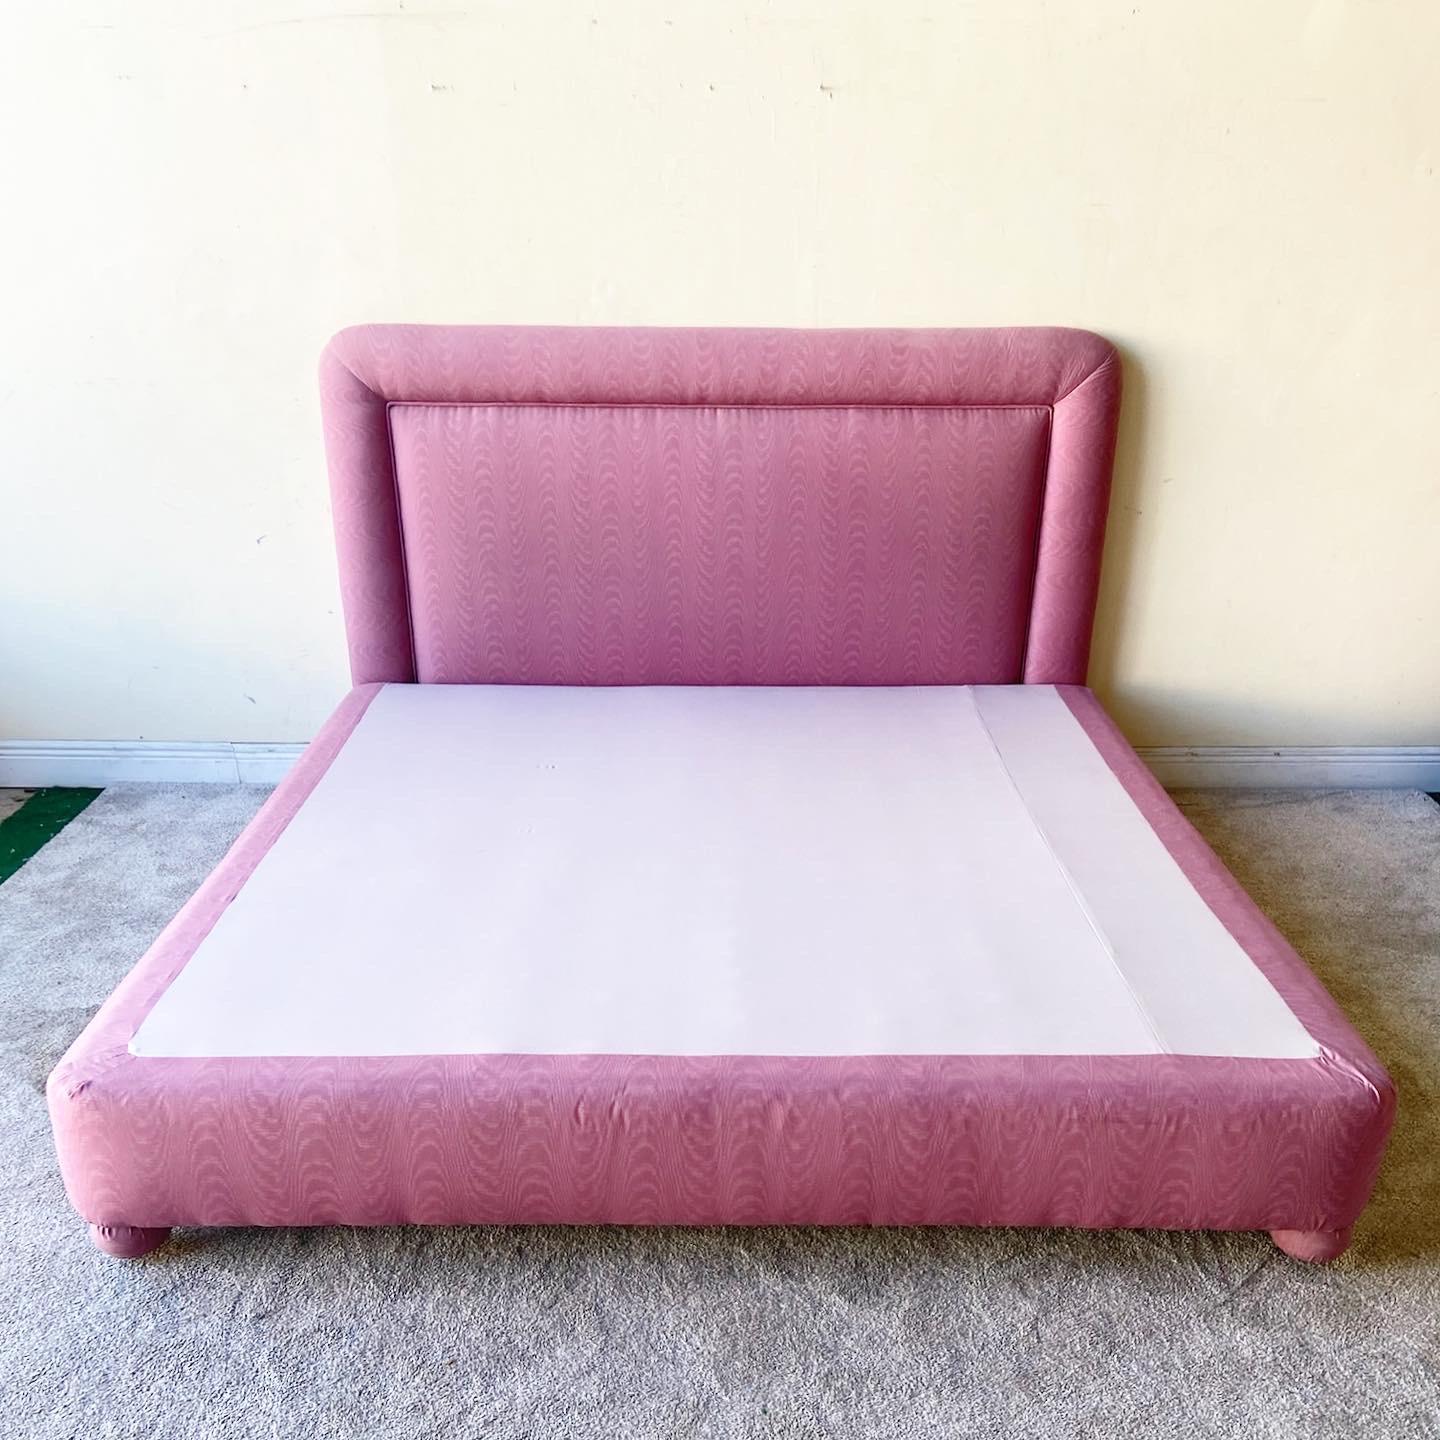 pink bed frames